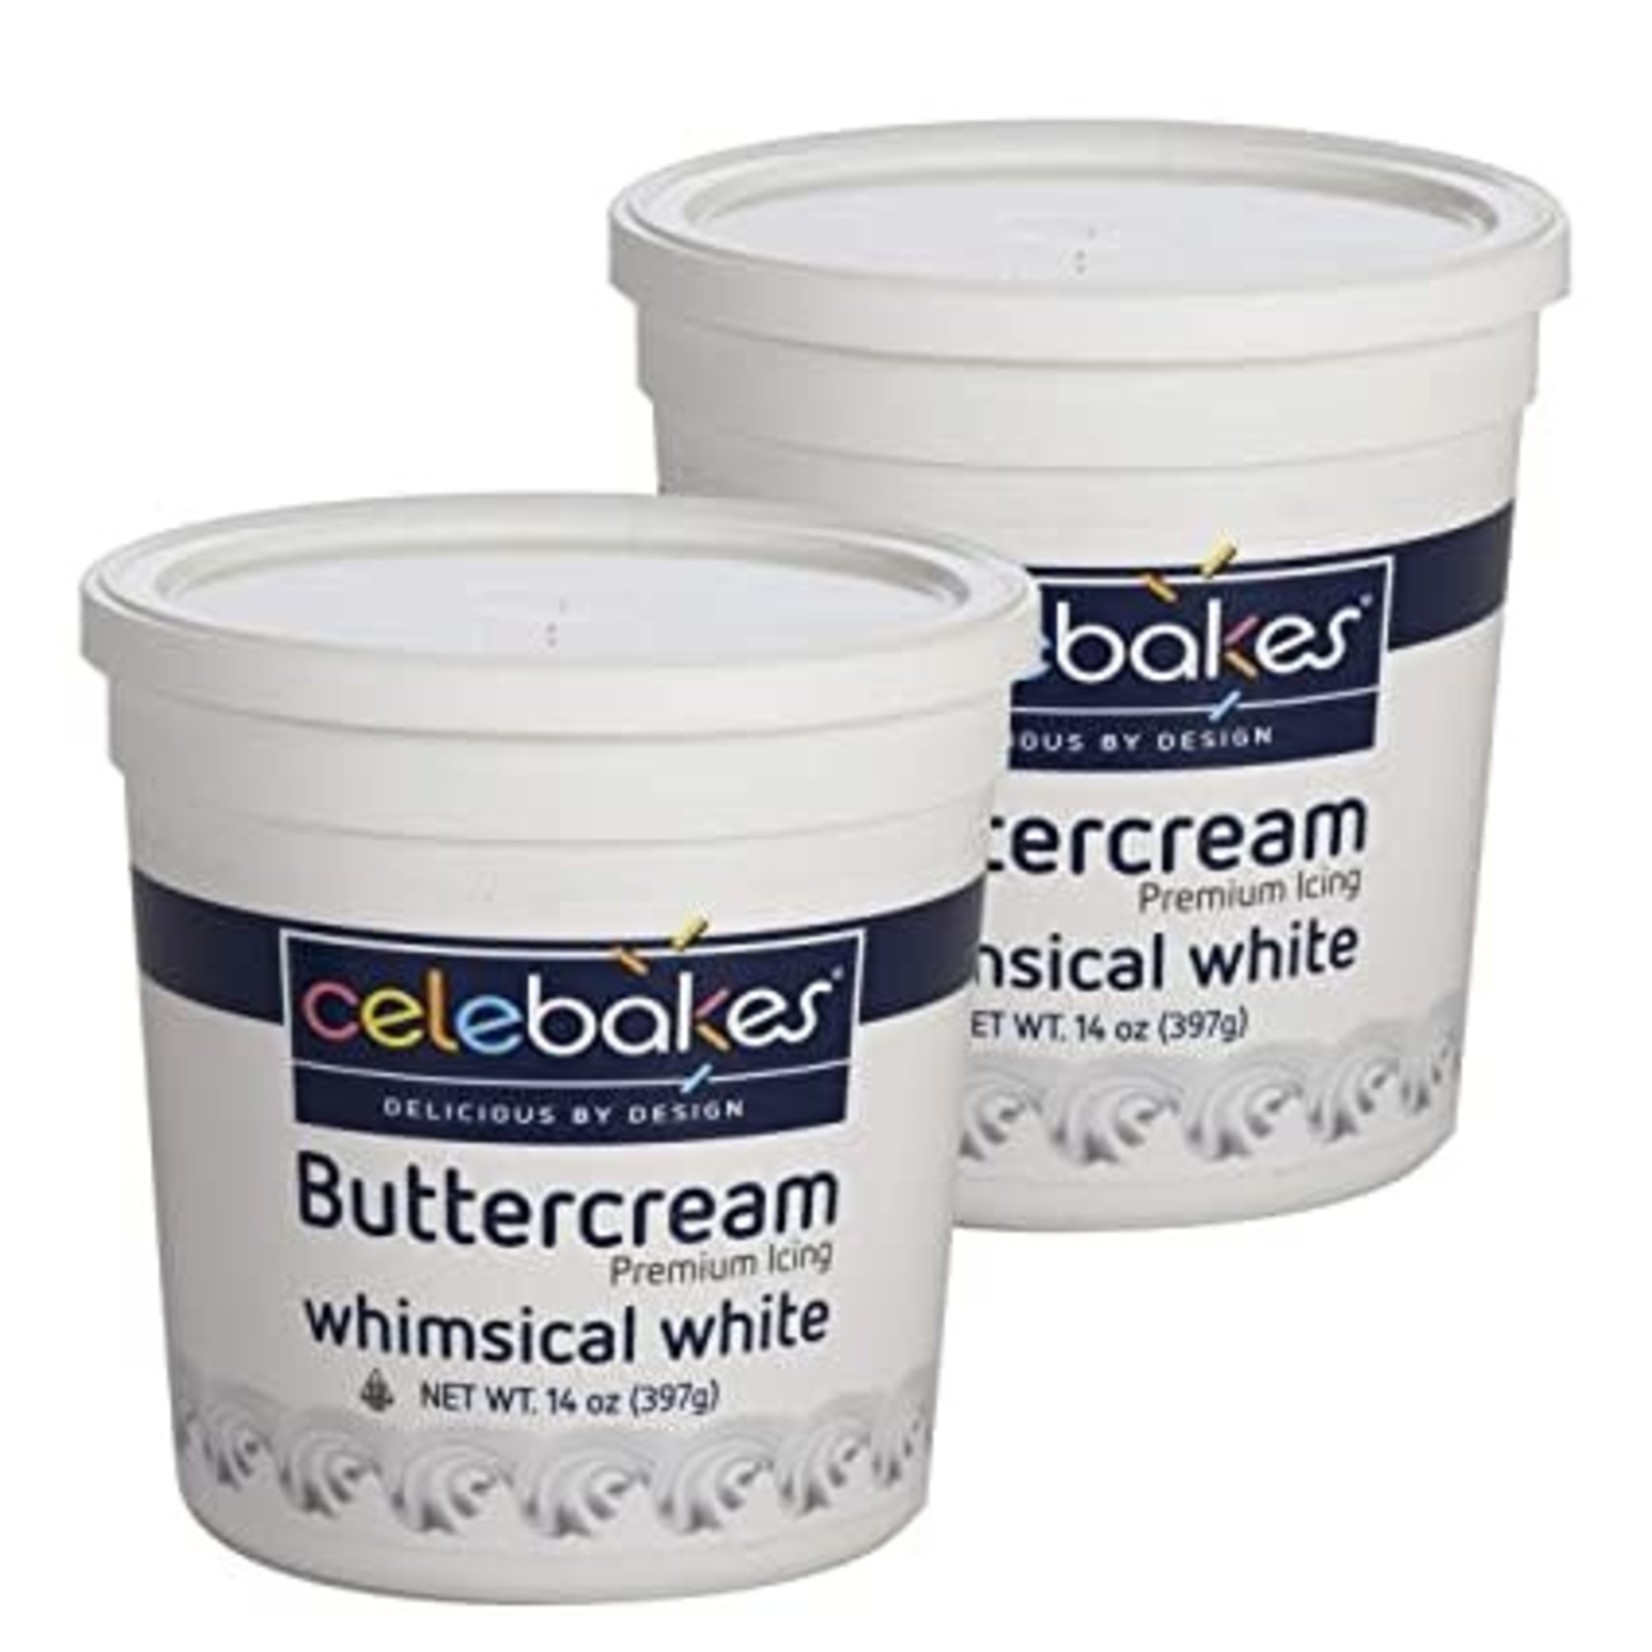 Buttercream Premium Icing - White